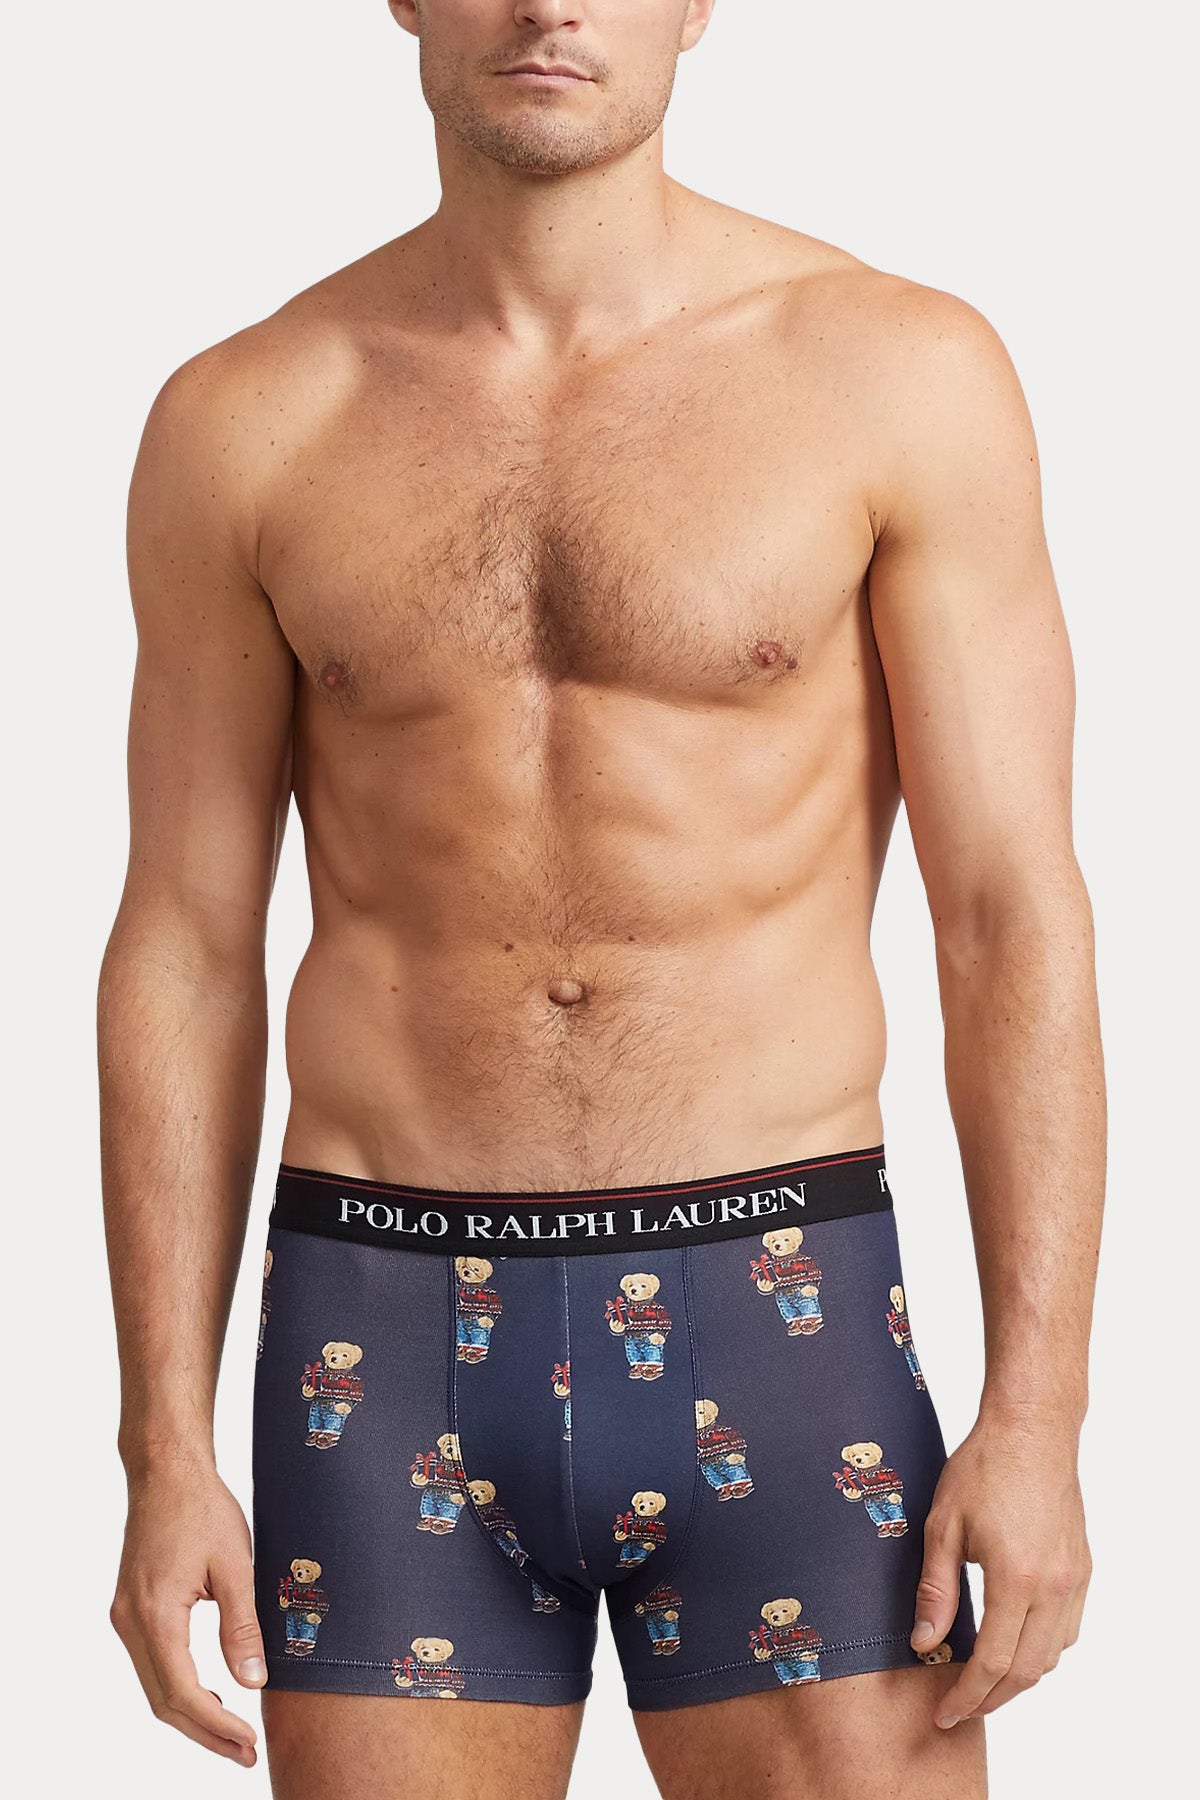 Polo Ralph Lauren Polo Bear 2'li Paket Streç Pamuklu Boxer-Libas Trendy Fashion Store